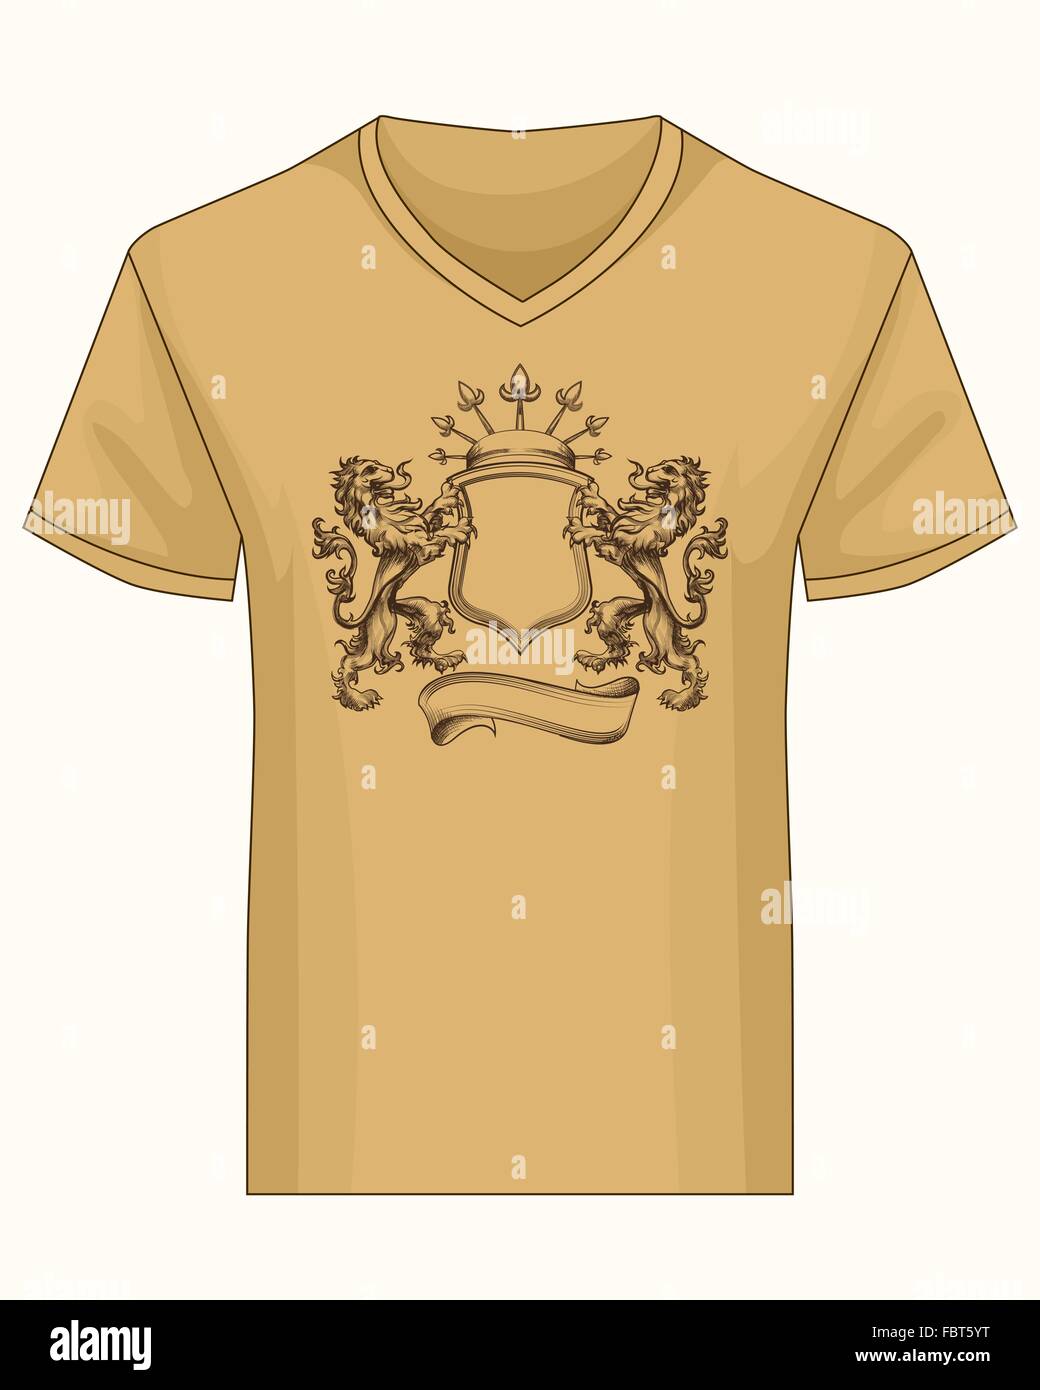 Camiseta con cuello en V con la plantilla de impresión. Escudo de fama con corona y leones dibujado en estilo de grabado. Ilustración del Vector